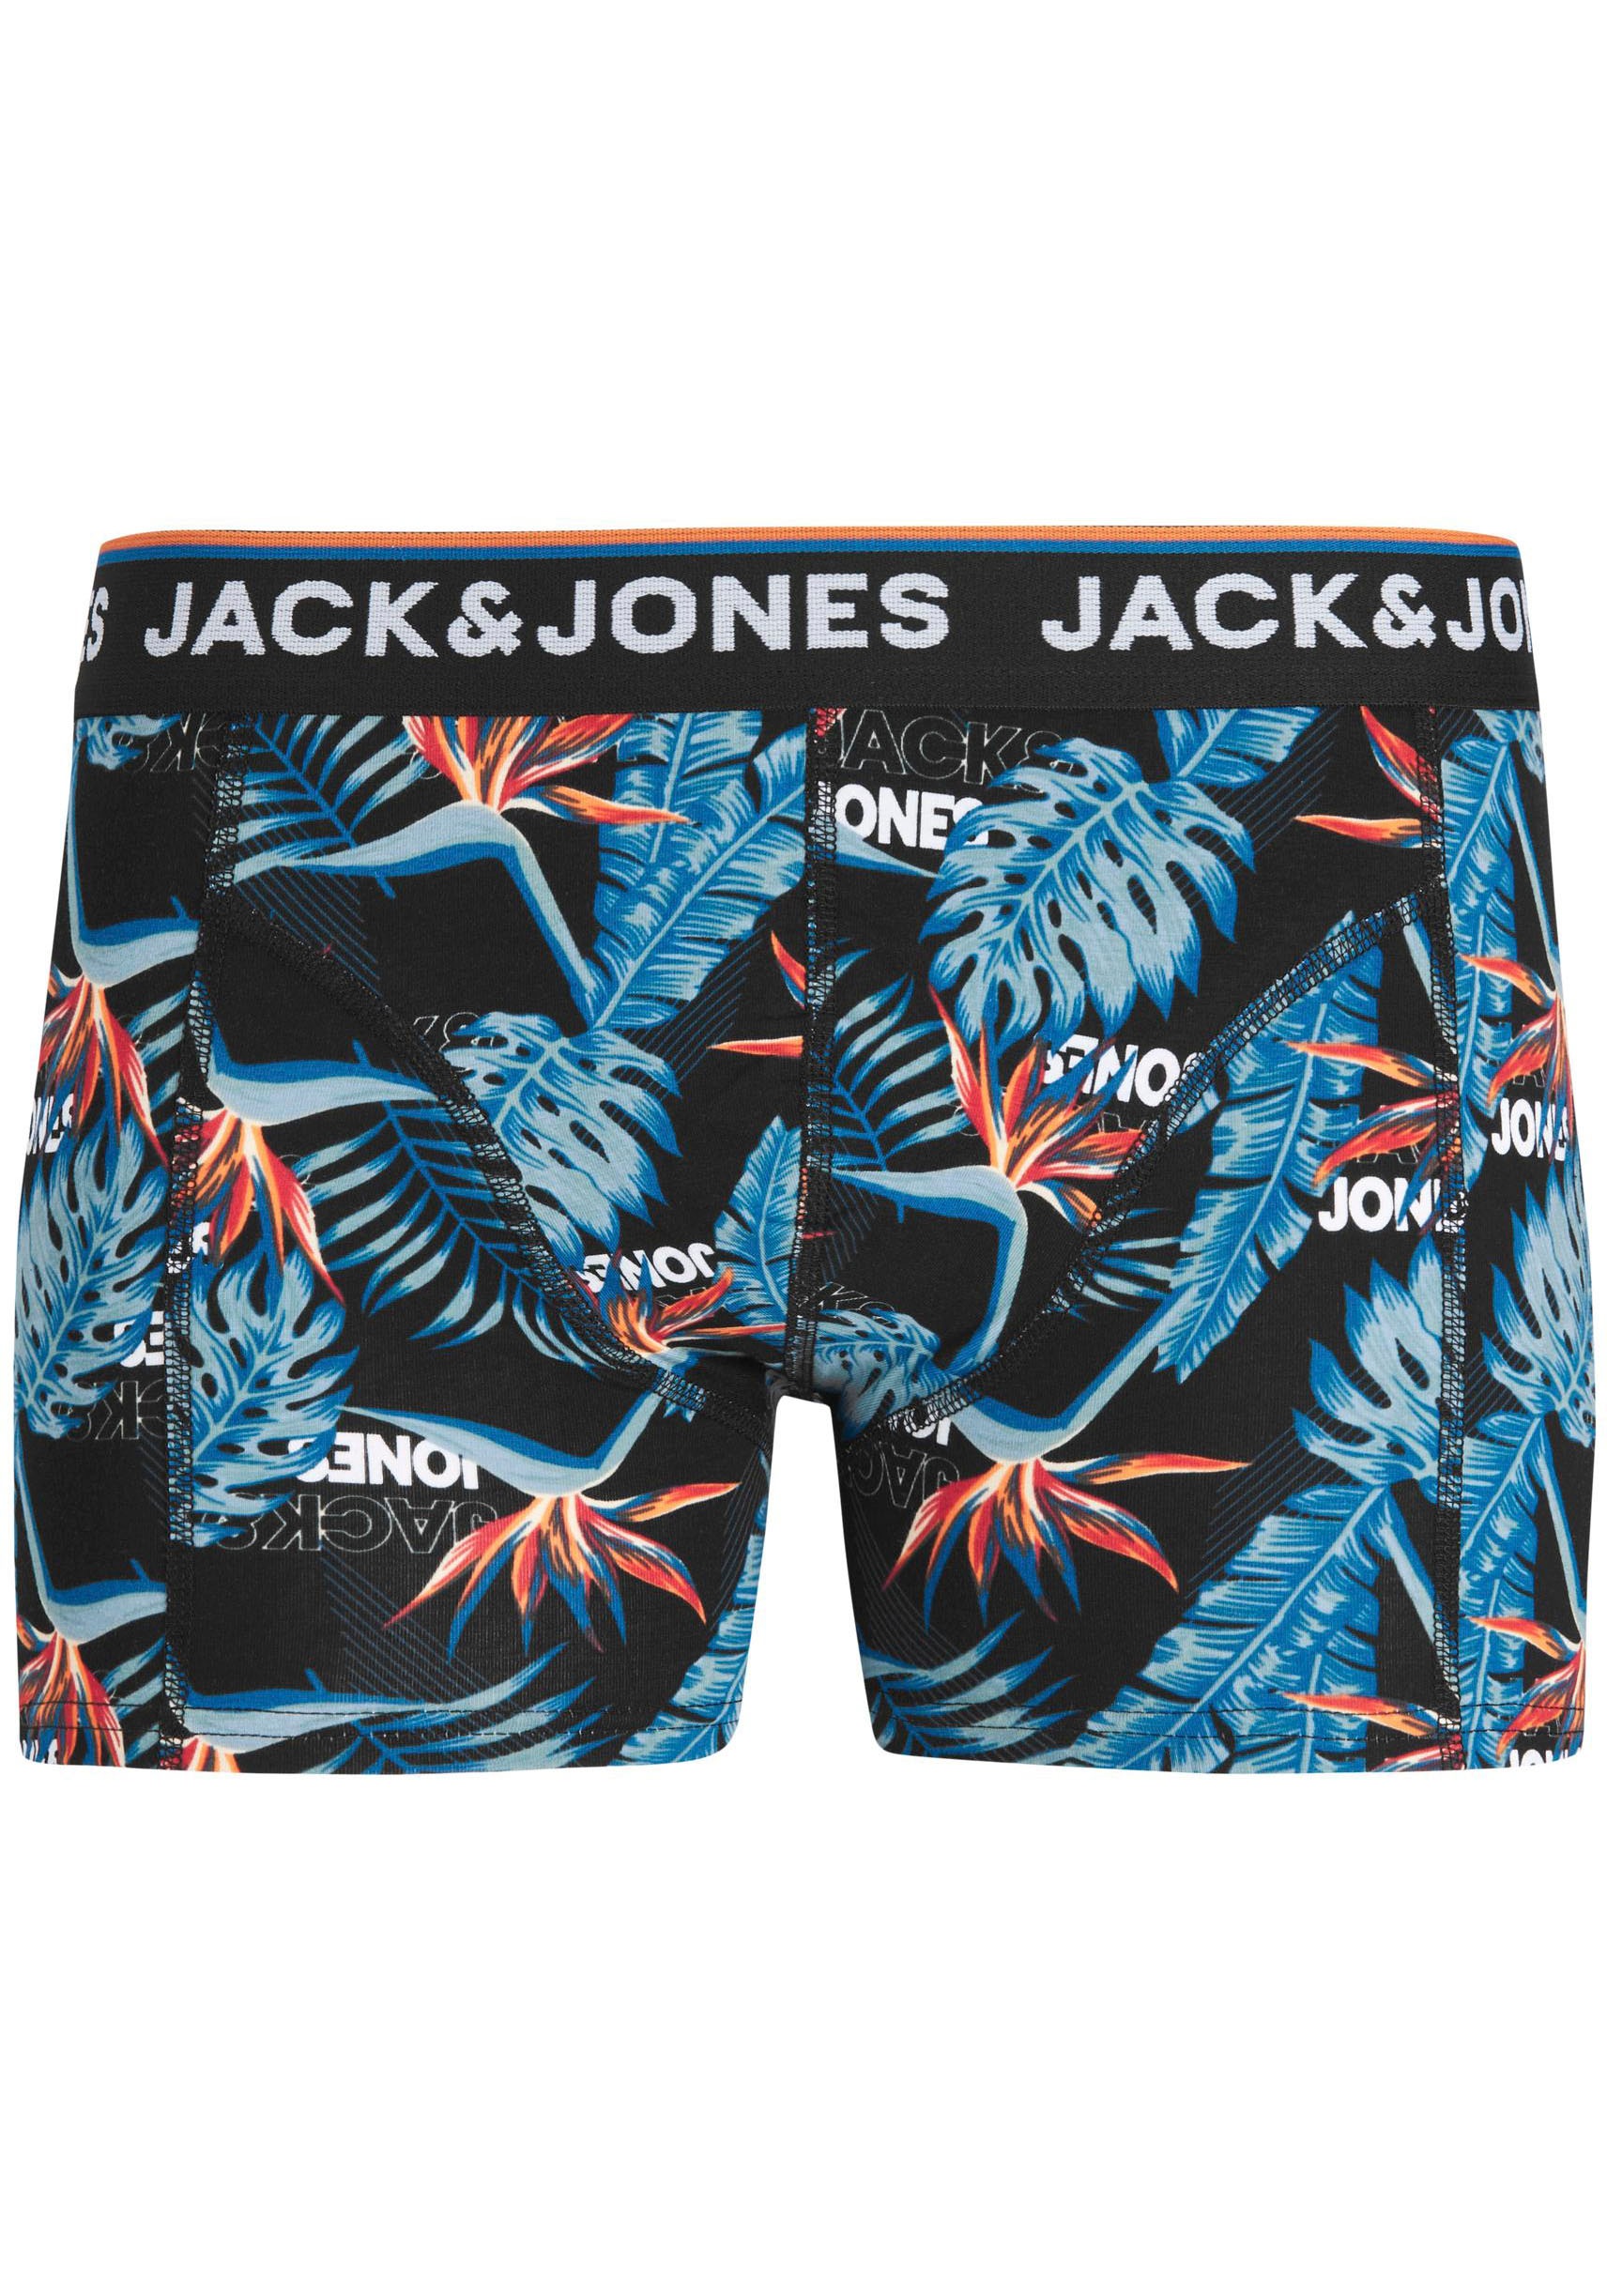 PACK JNR«, Junior 3 sur & Trouver »JACAZORES Jack 3 NOOS Jones (Packung, TRUNKS Boxershorts St.)